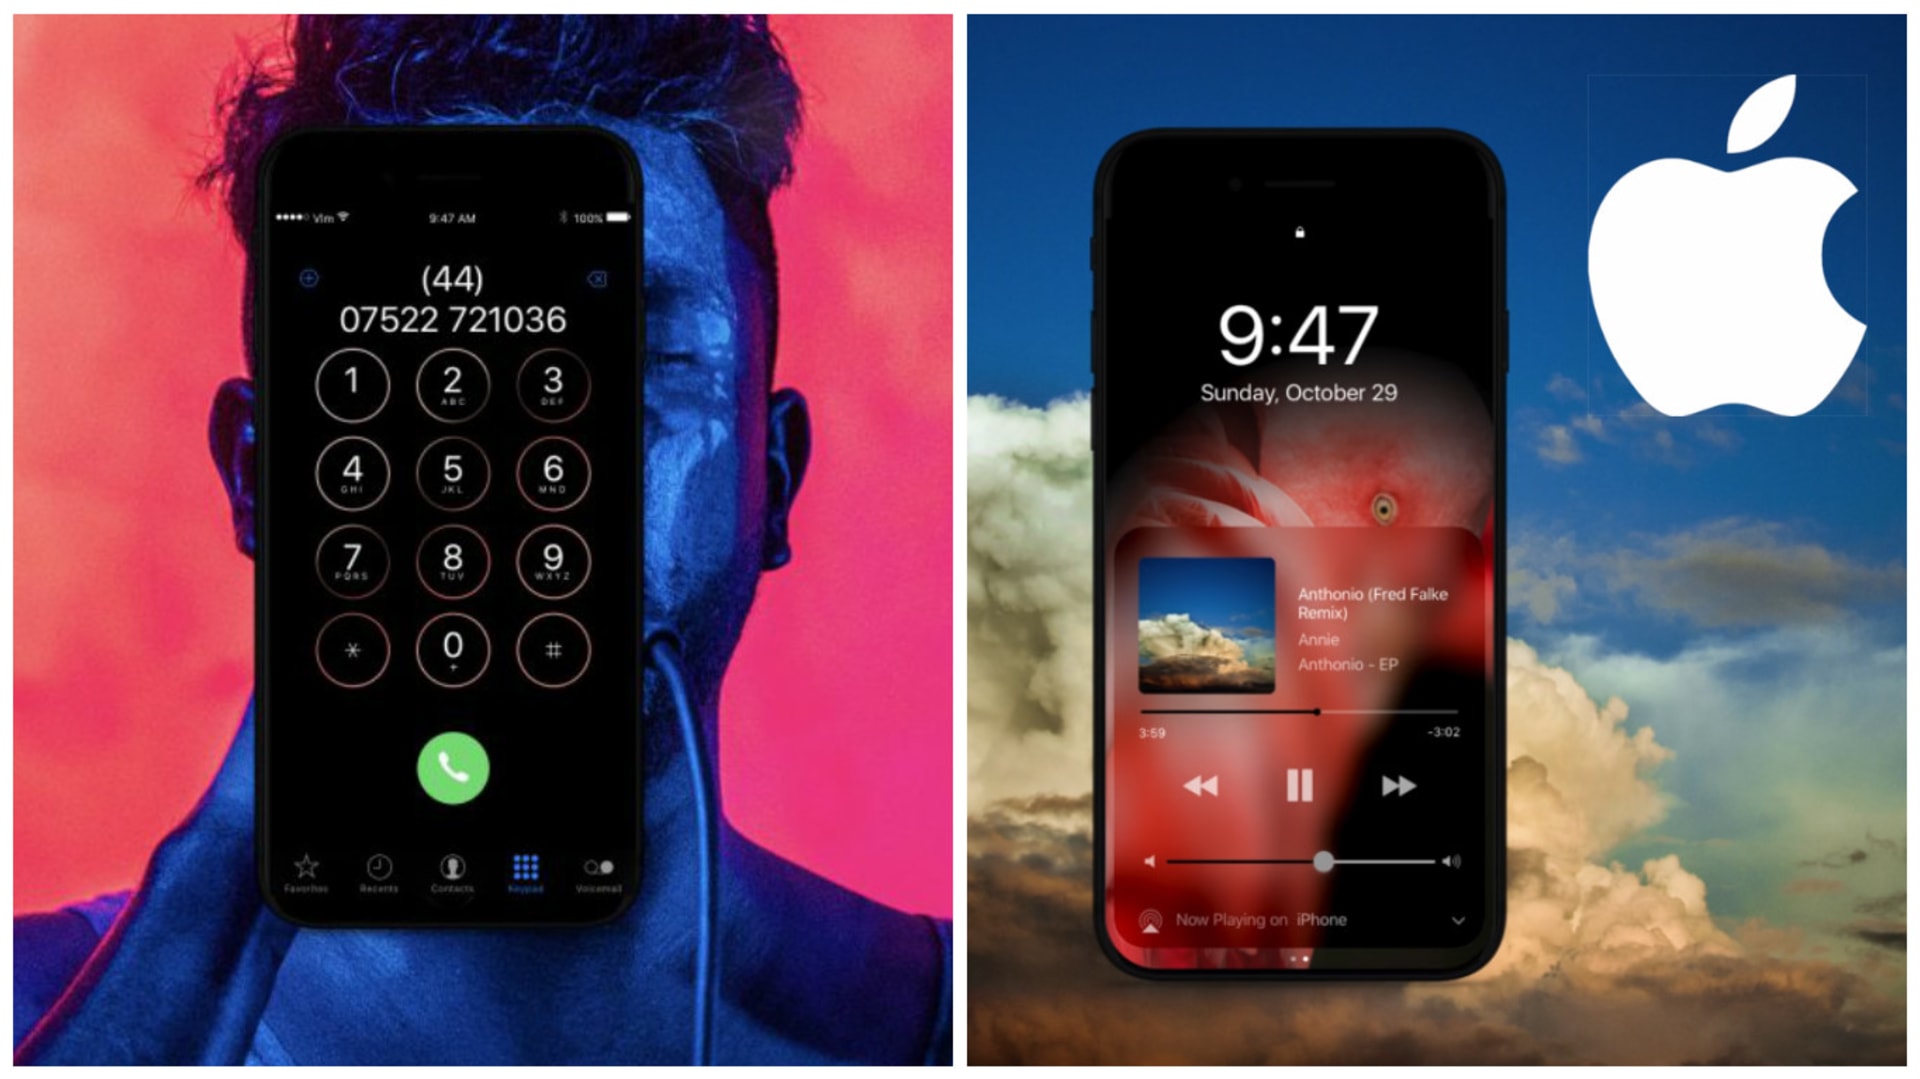 Nové video ukazuje, že displej nového iPhonu 8 bude nejvíce sexy ve tmavém naladění.